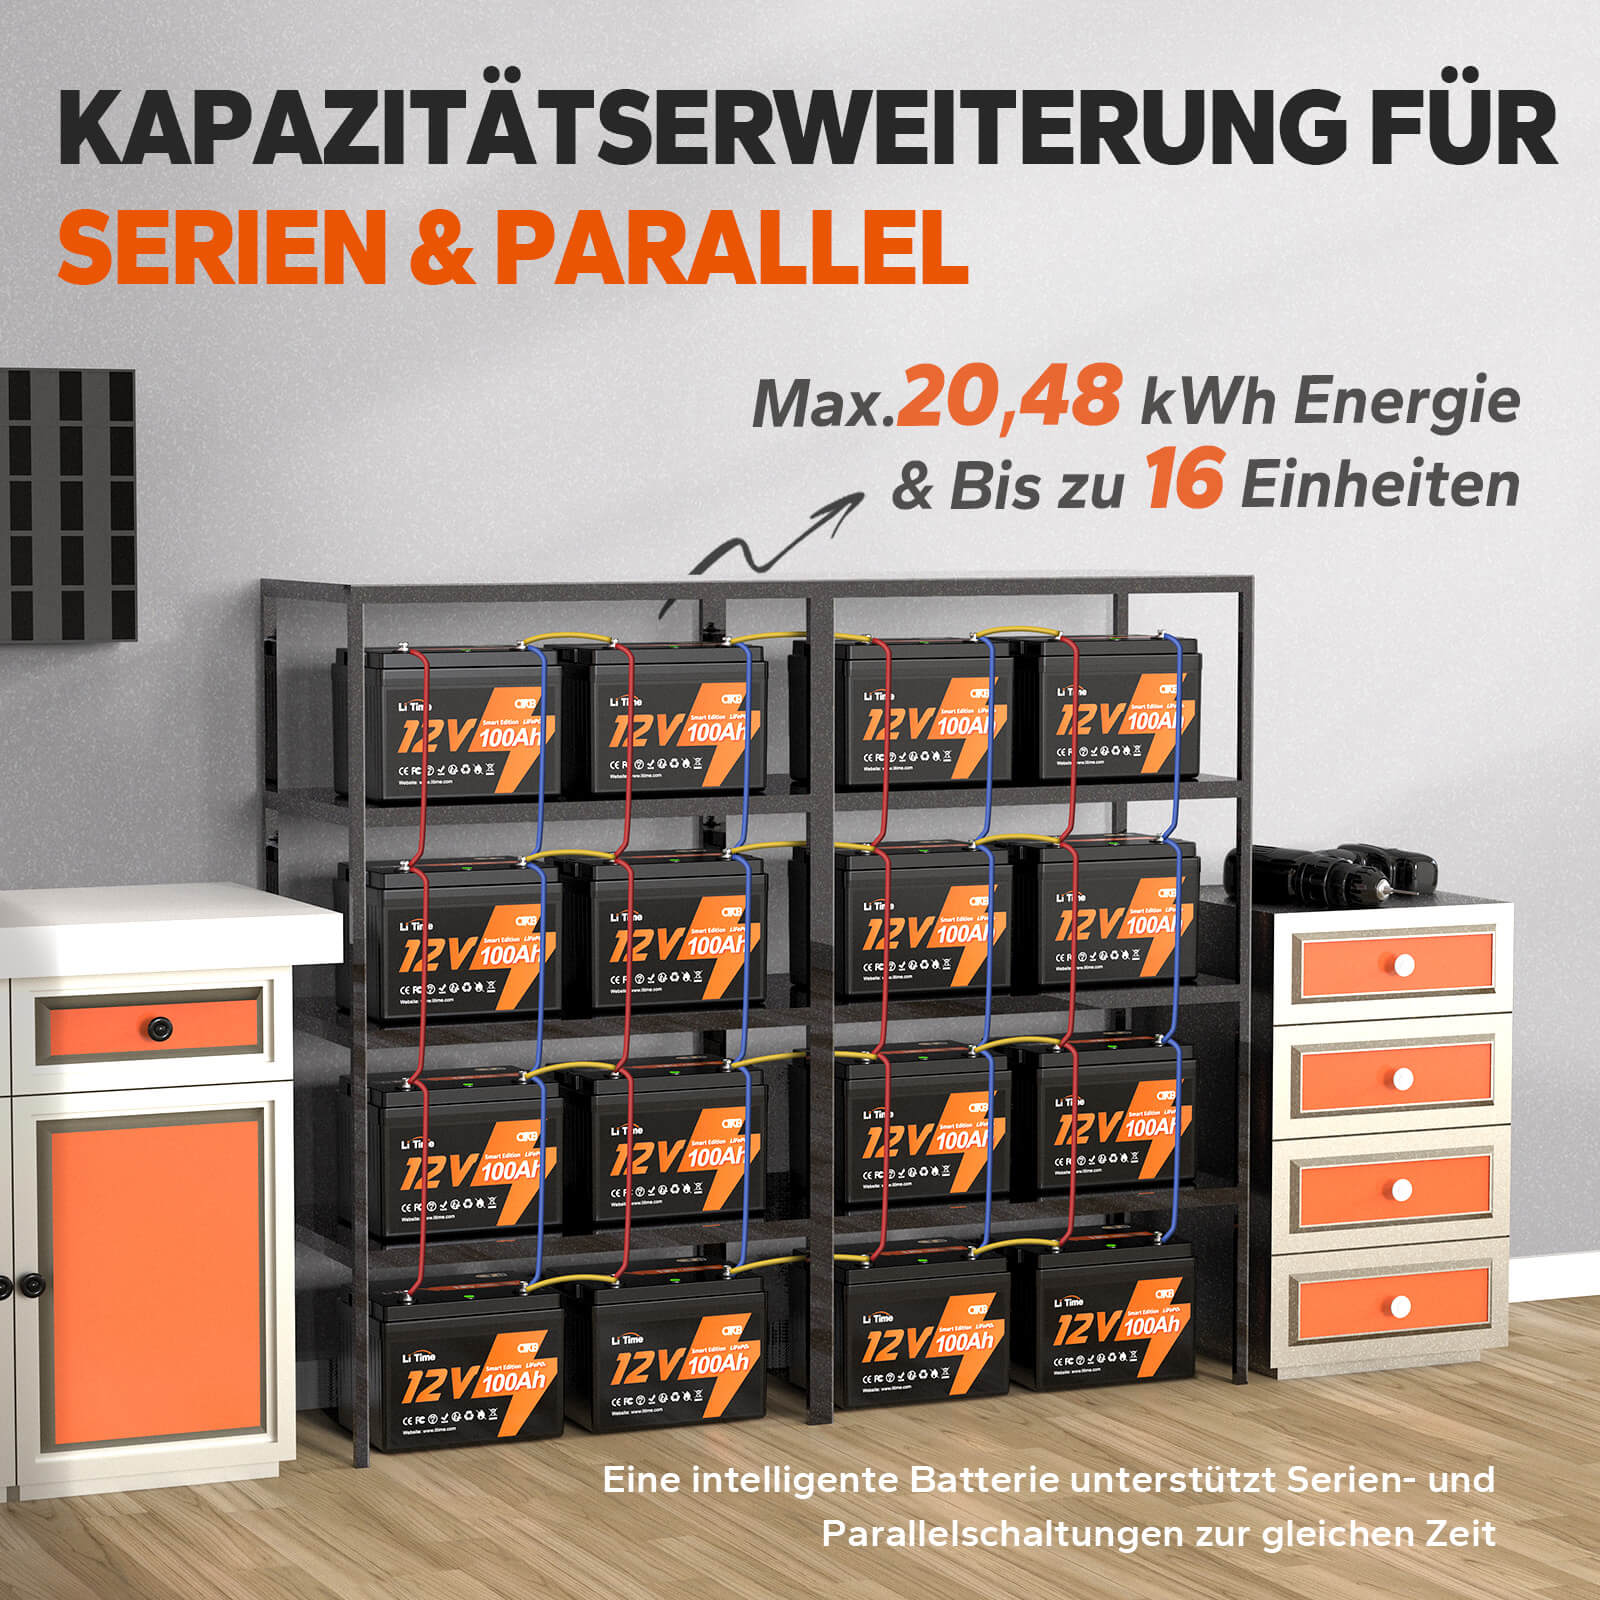 【0% VAT】LiTime 12V 100Ah Inteligentna bateria litowa LiFePO4 (TYLKO dla budynków mieszkalnych i TYLKO w DEU - tylko dla klientów w Niemczech)